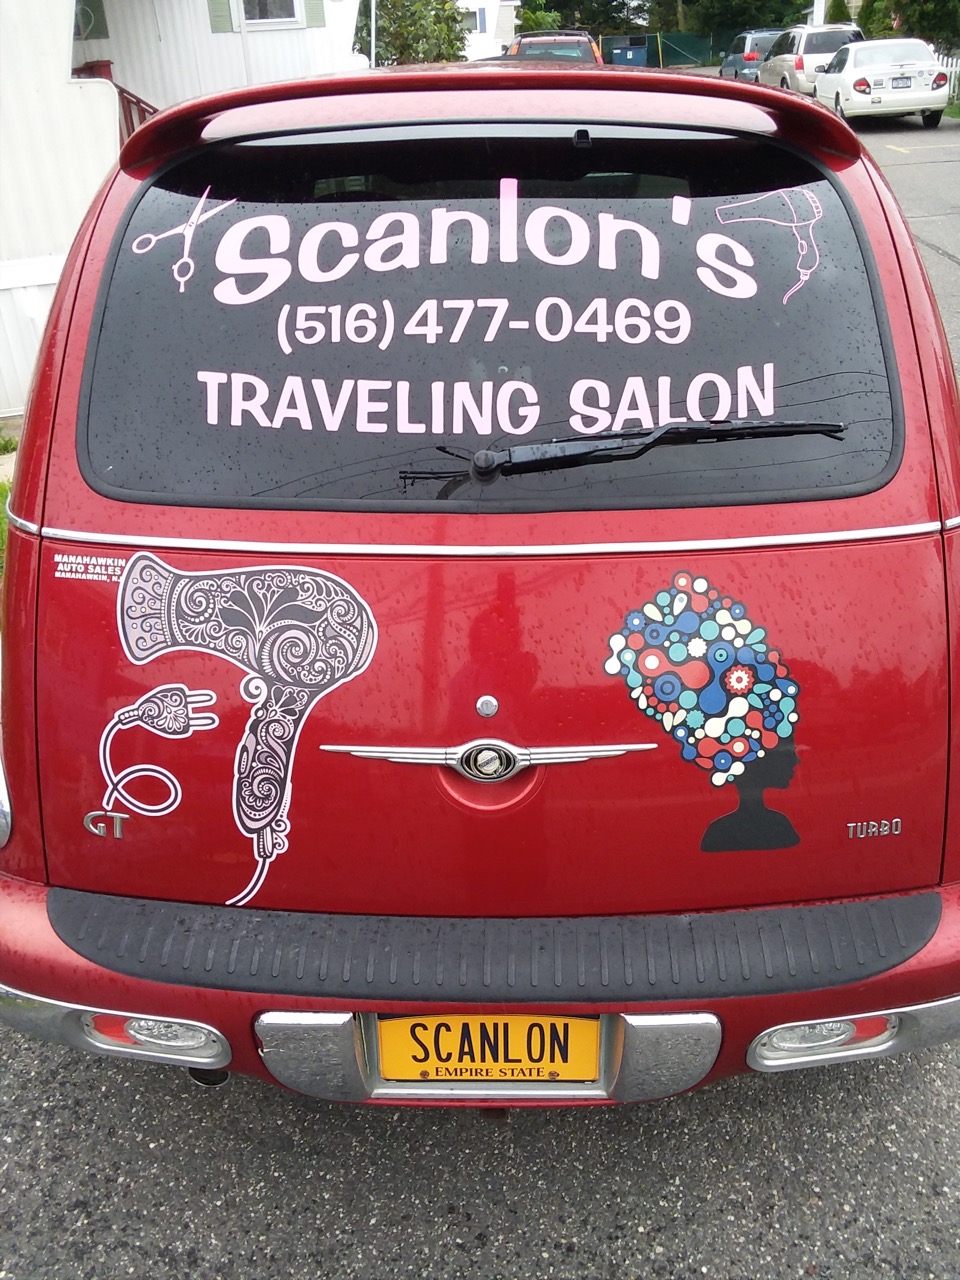 Scanlon's